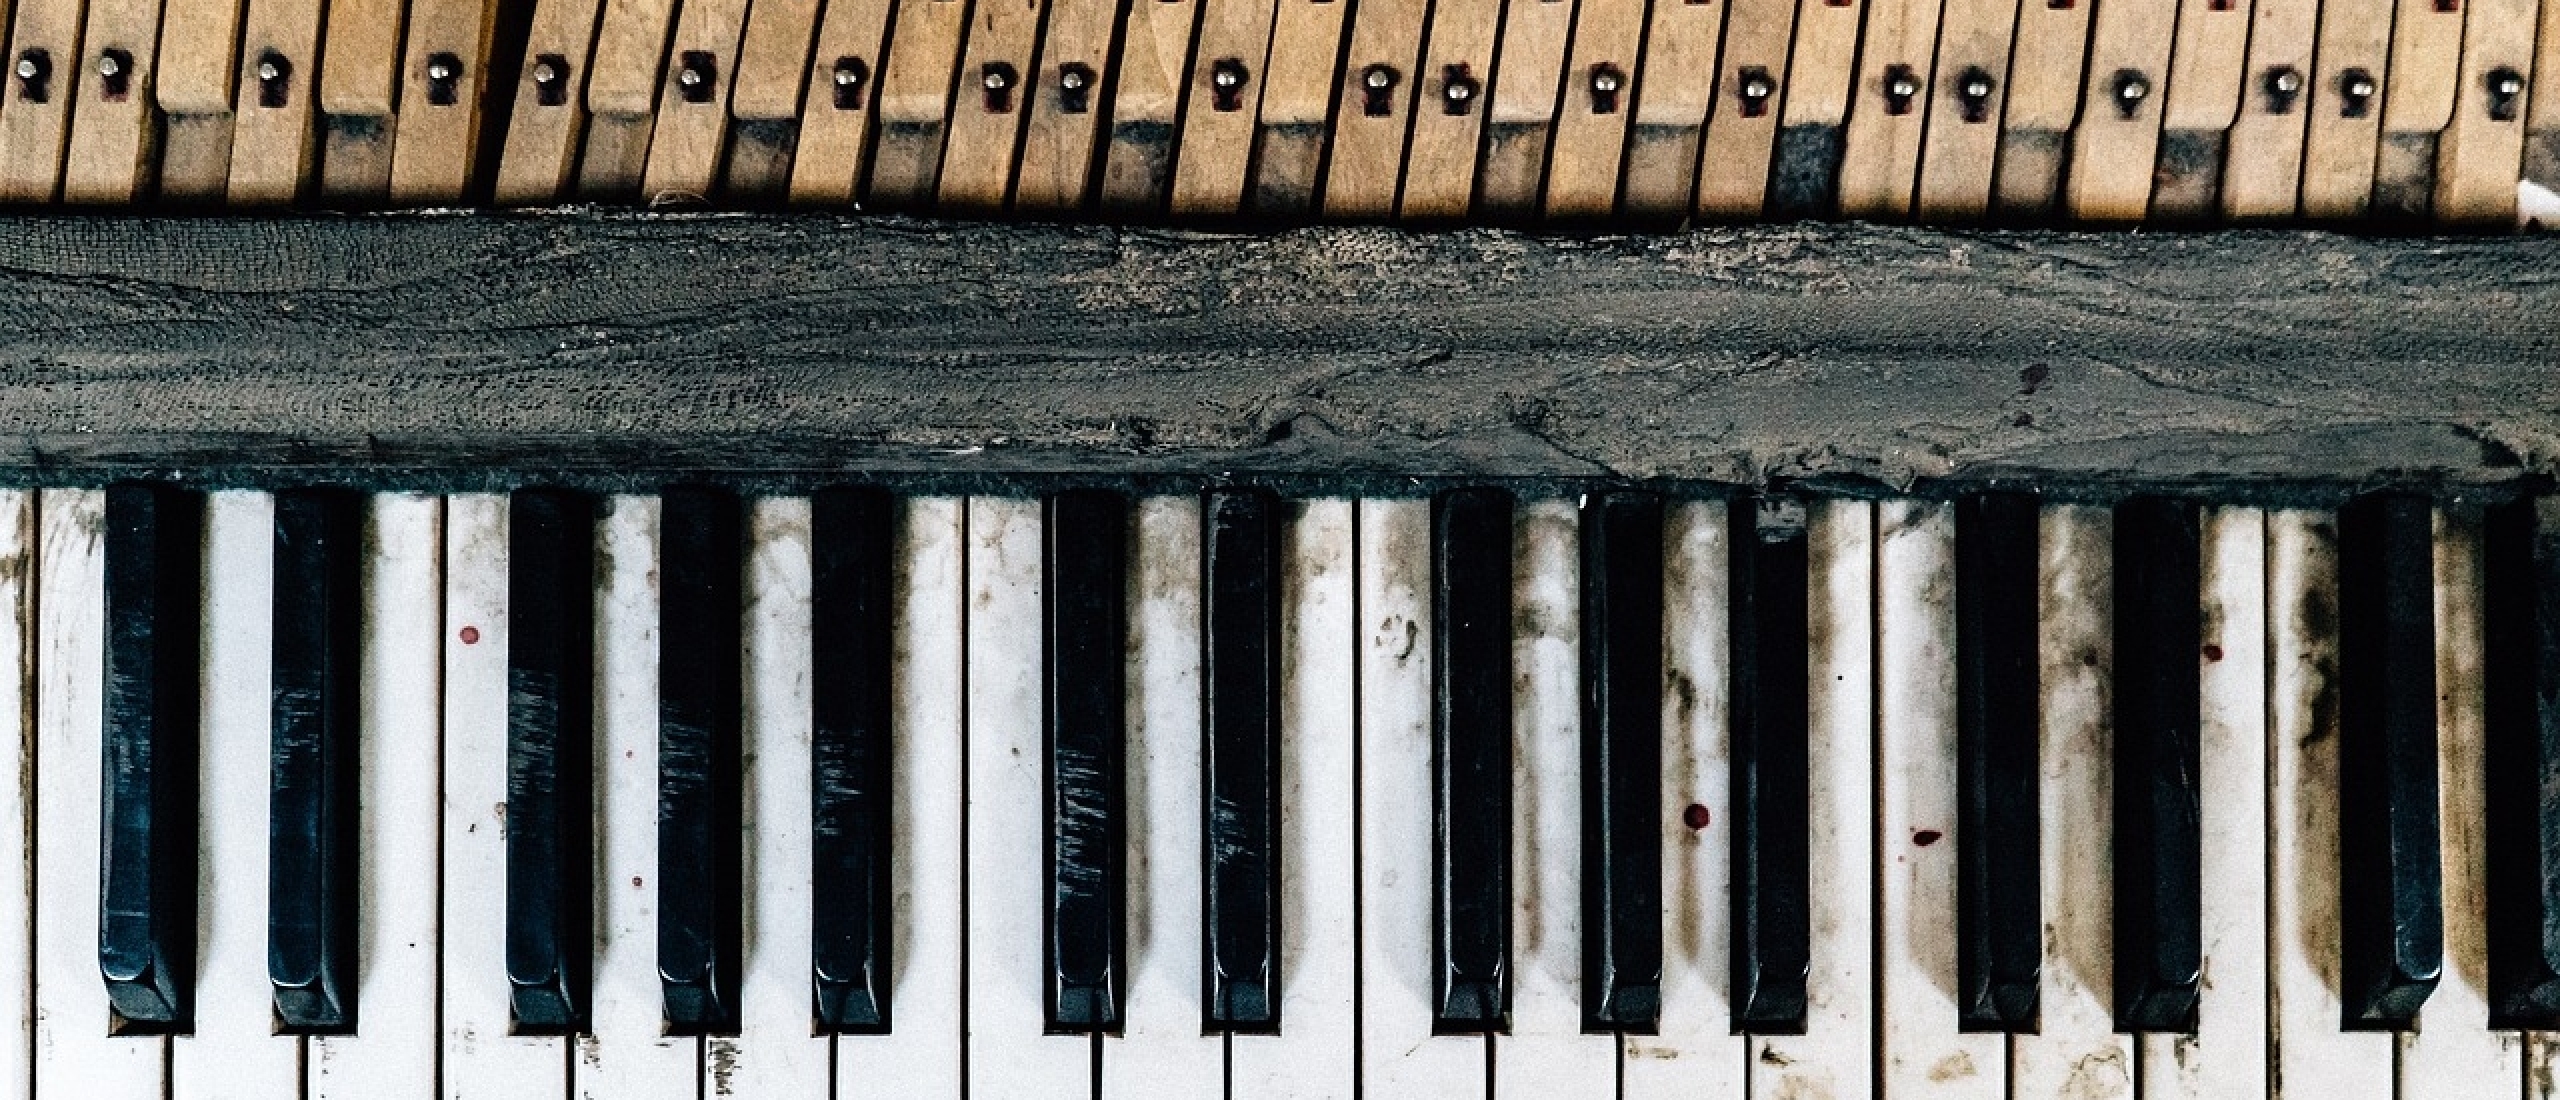 Hoe produceren de diverse piano soorten hun geluid?